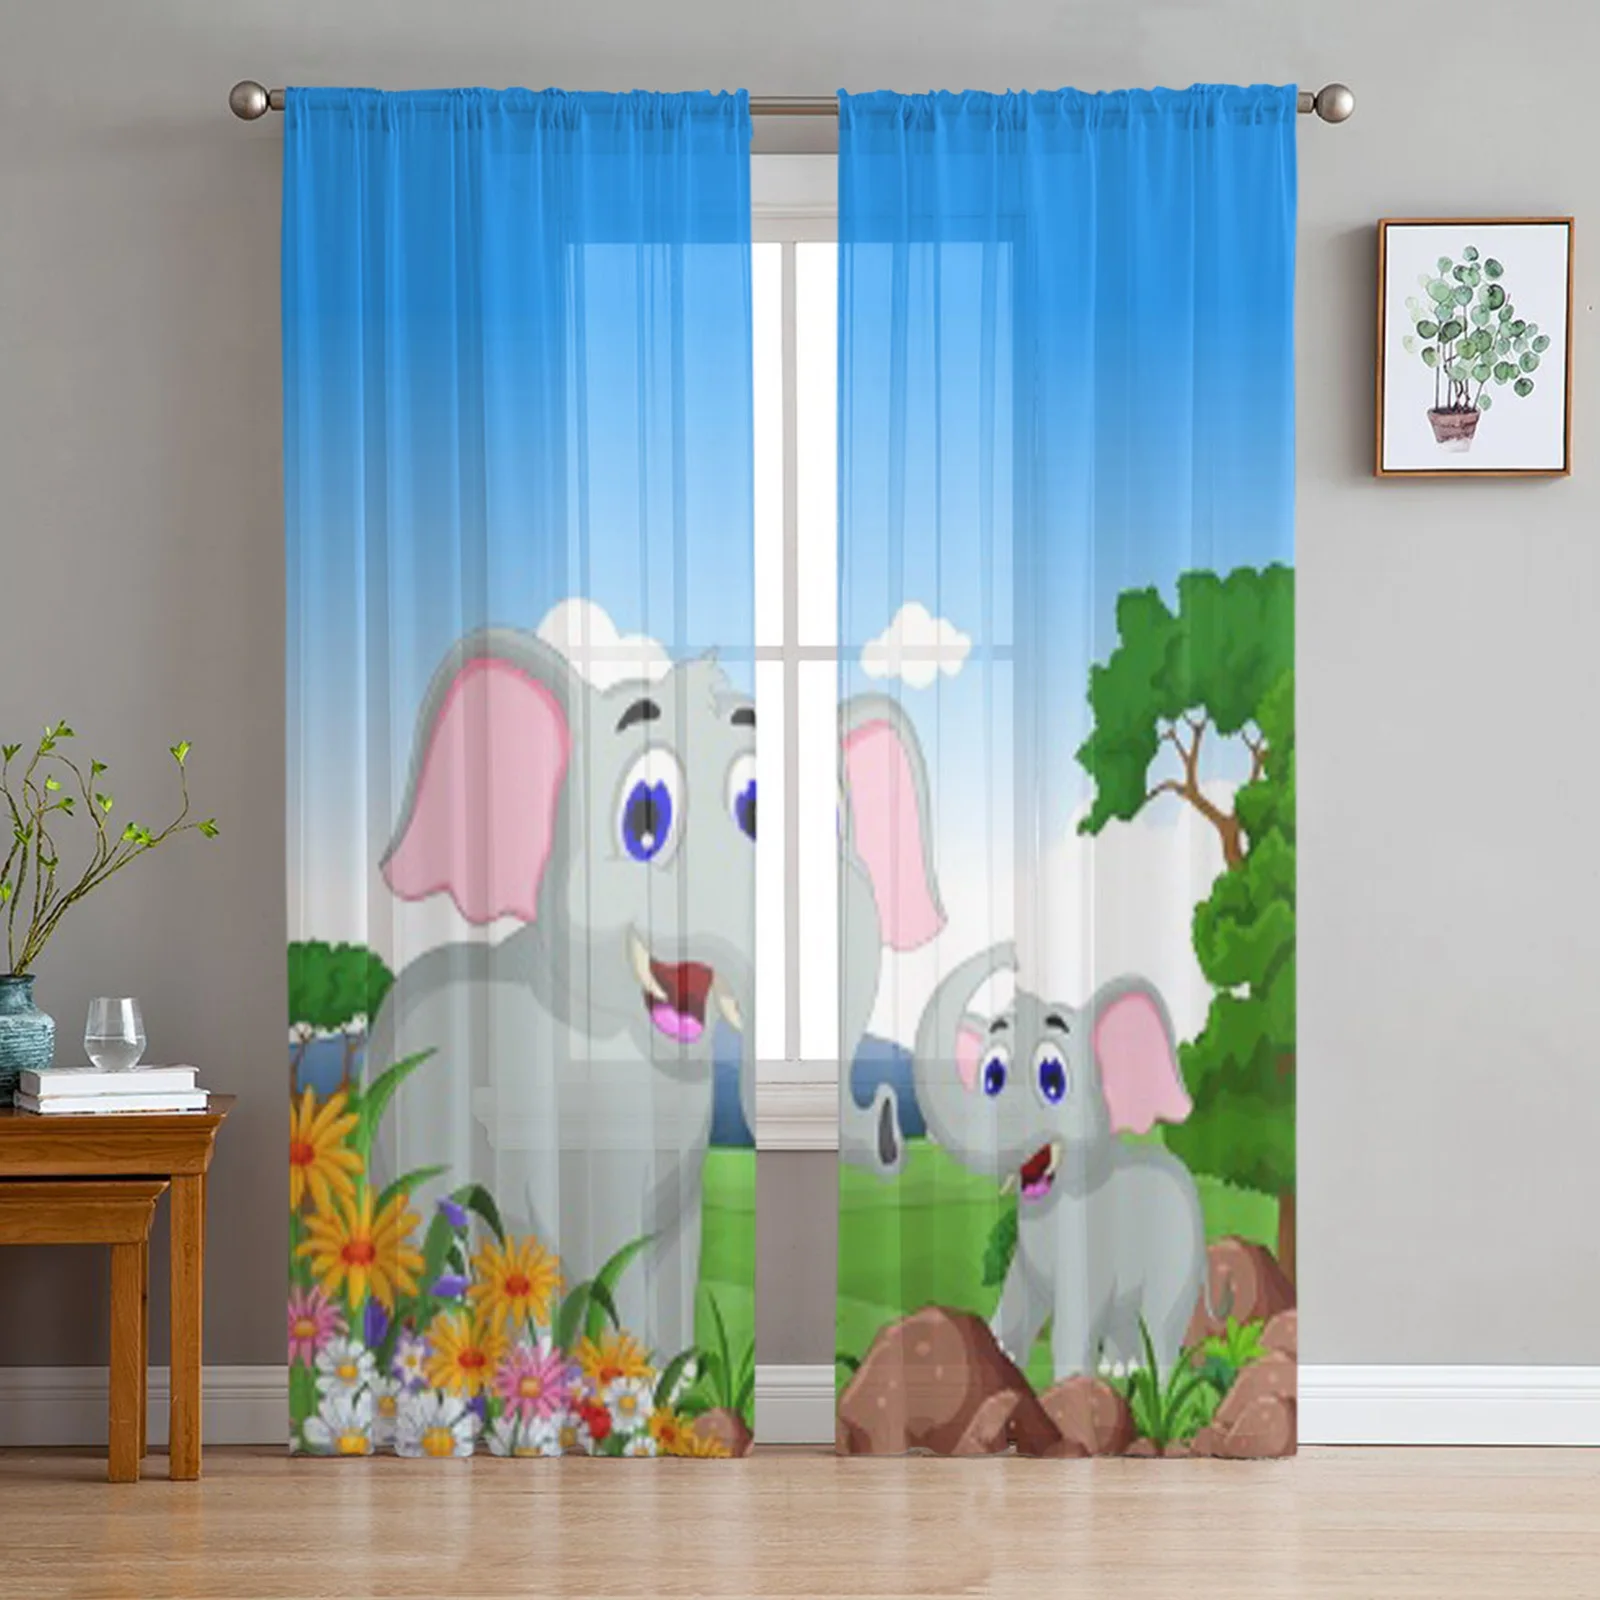 

Забавные мультяшные Слоны, тюлевые прозрачные шторы s для кухни, окна, гостиной, современные занавески из вуали, занавески для спальни